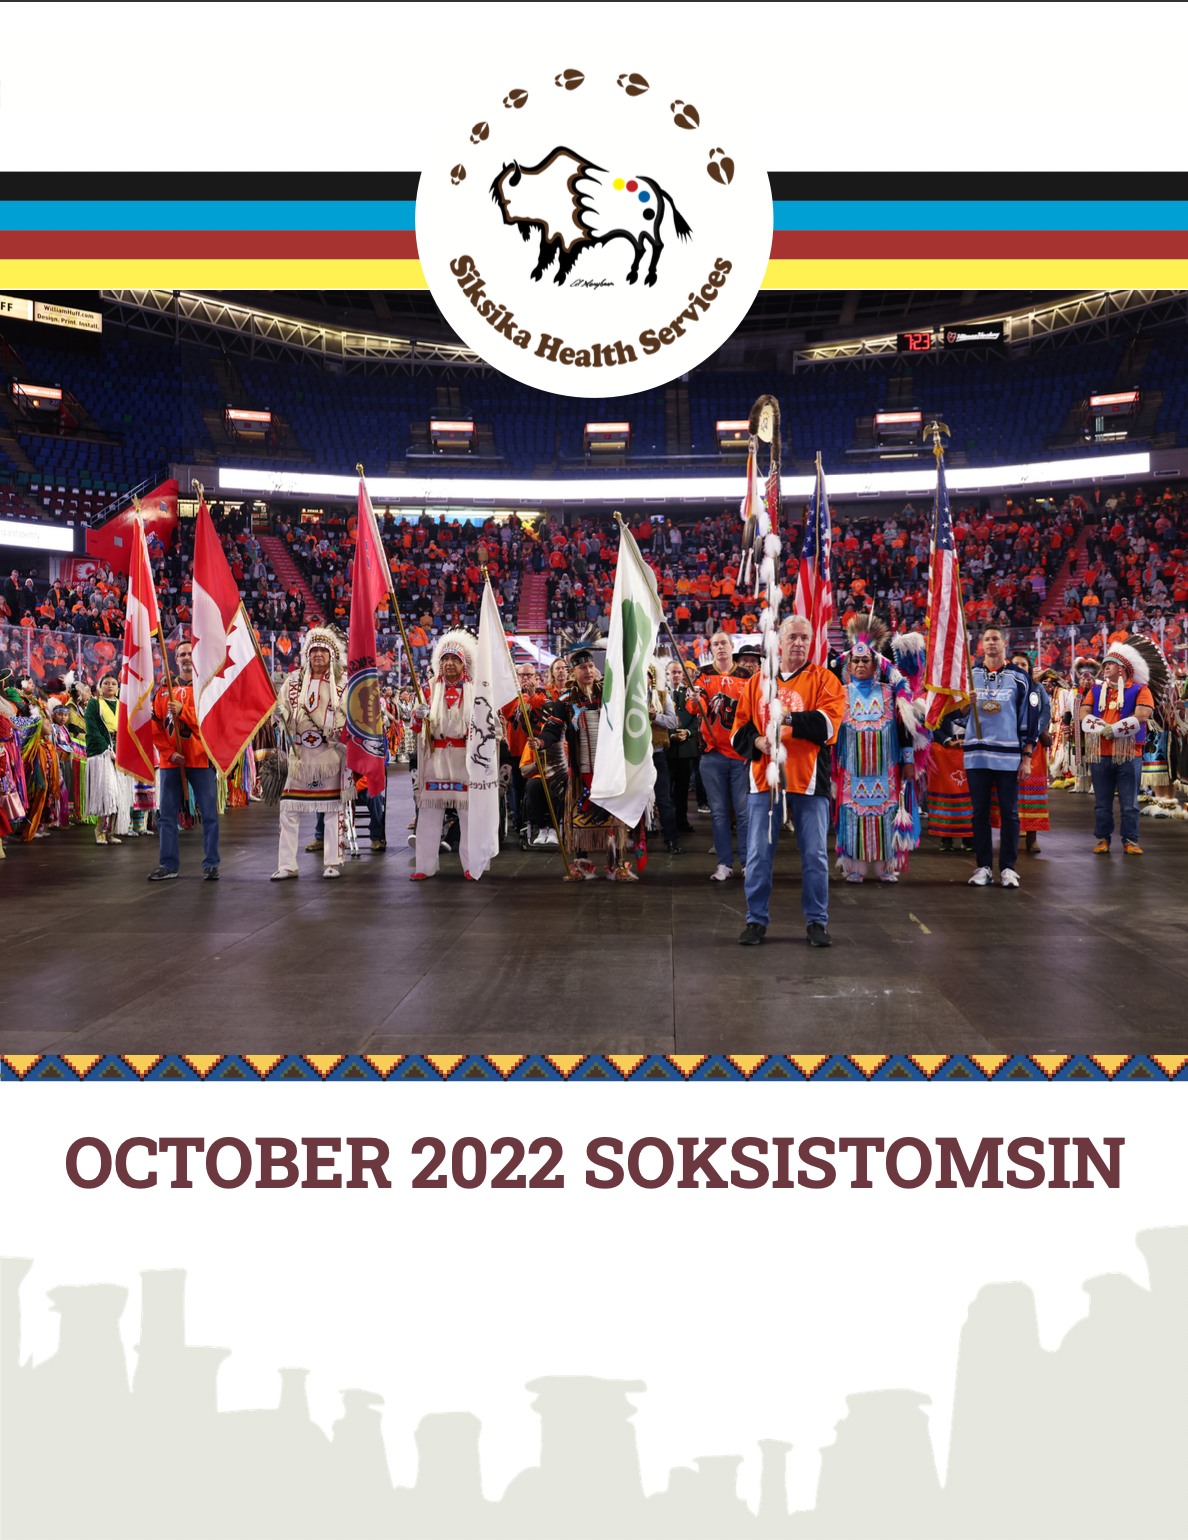 SOKSISTOMSIN October 2022